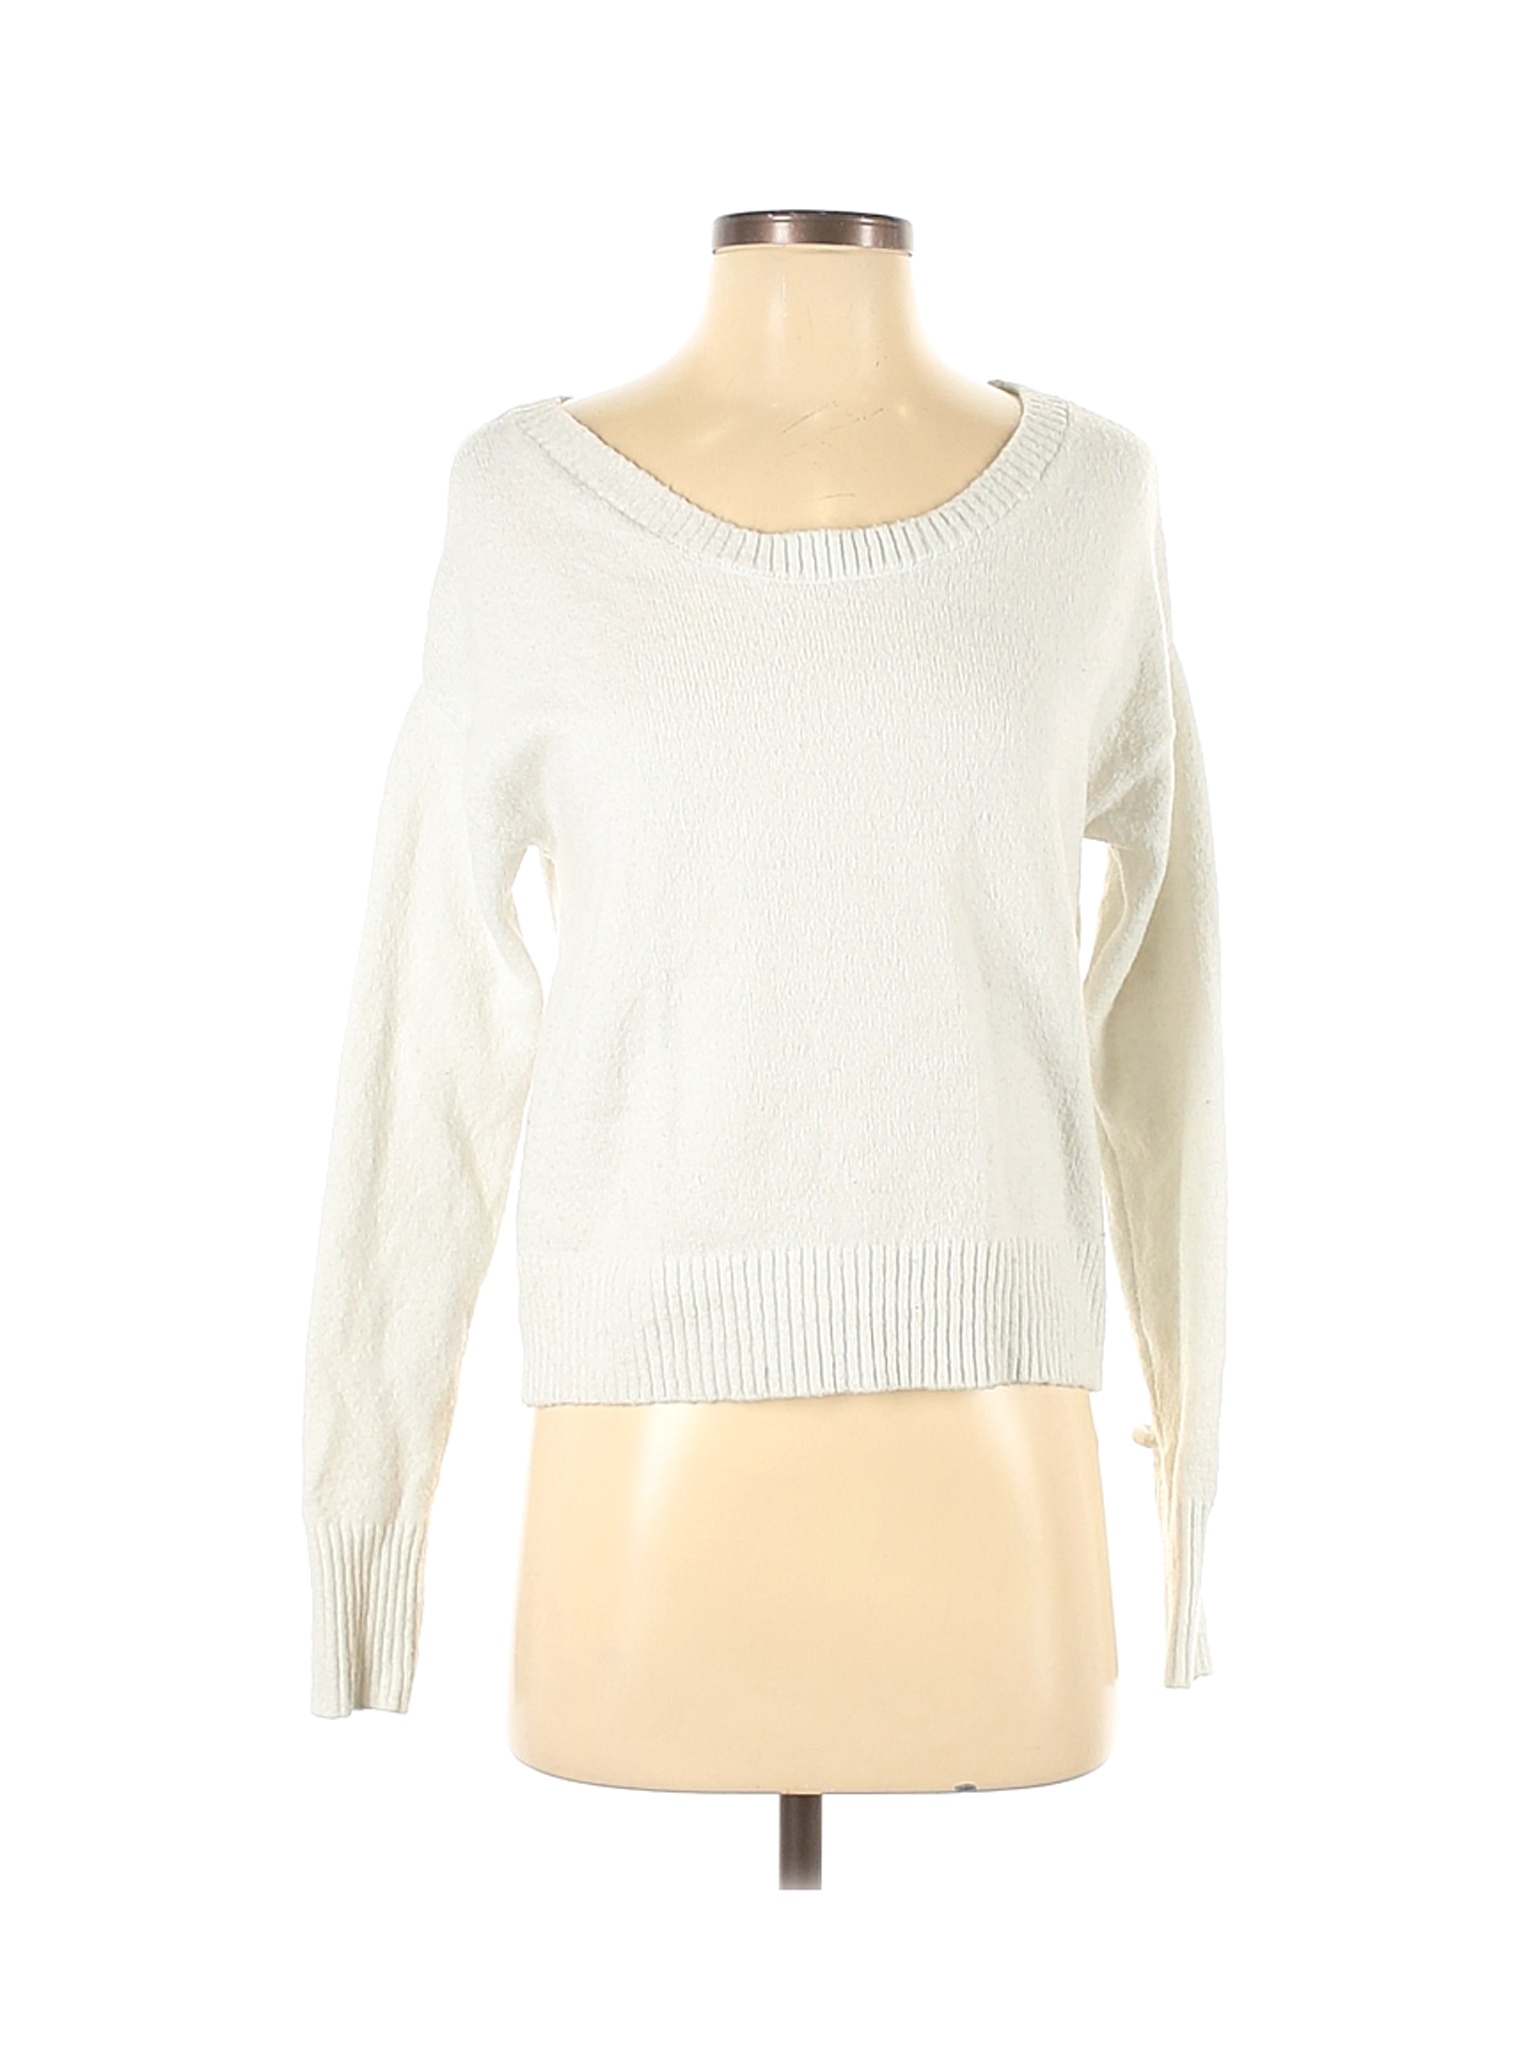 Garage Women White Pullover Sweater XS | eBay